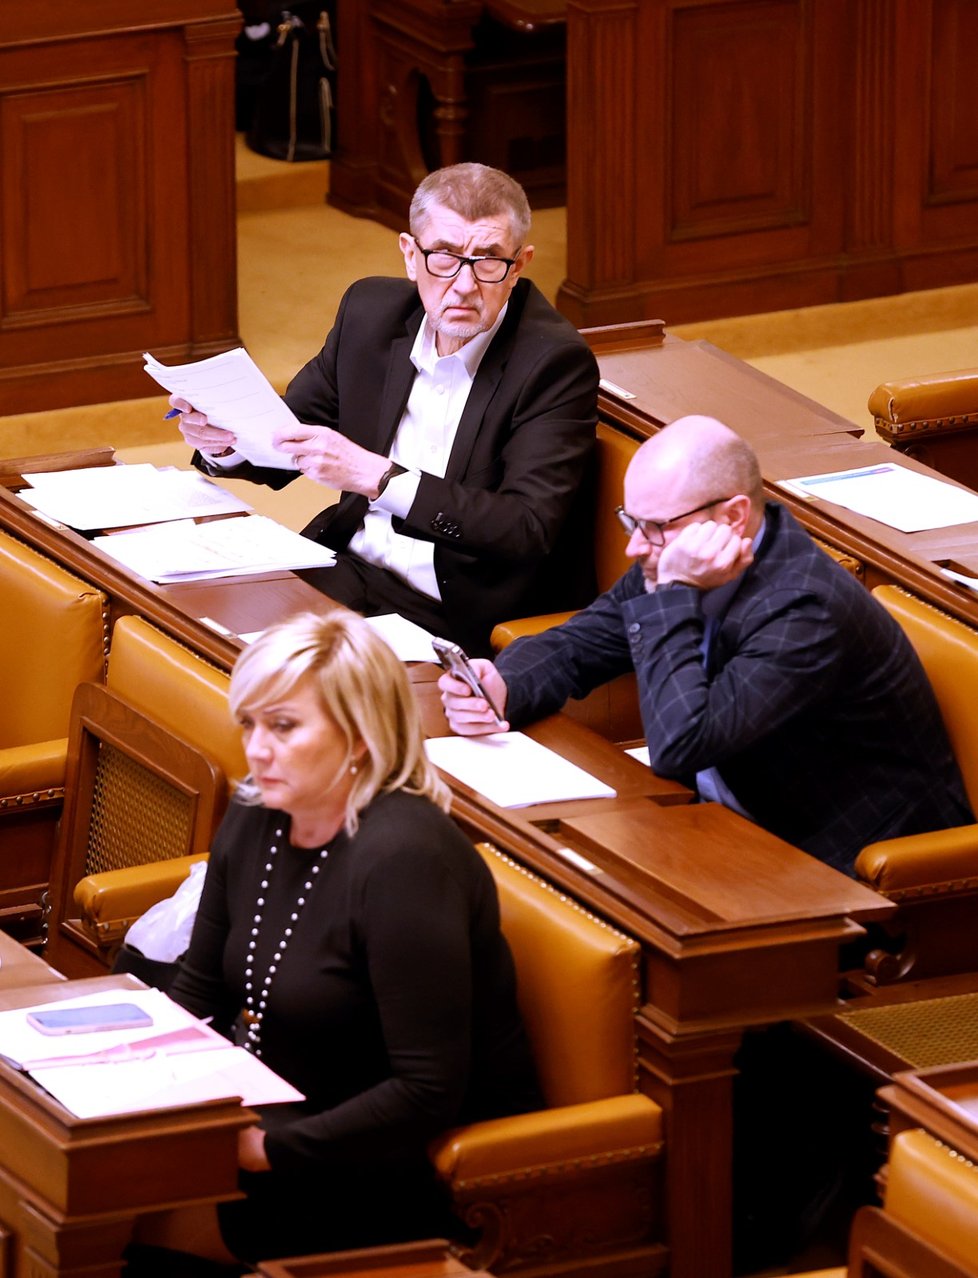 Poslanecká sněmovna 4. 4. 2022 - Alena Schillerová (ANO), Andrej Babiš (ANO)